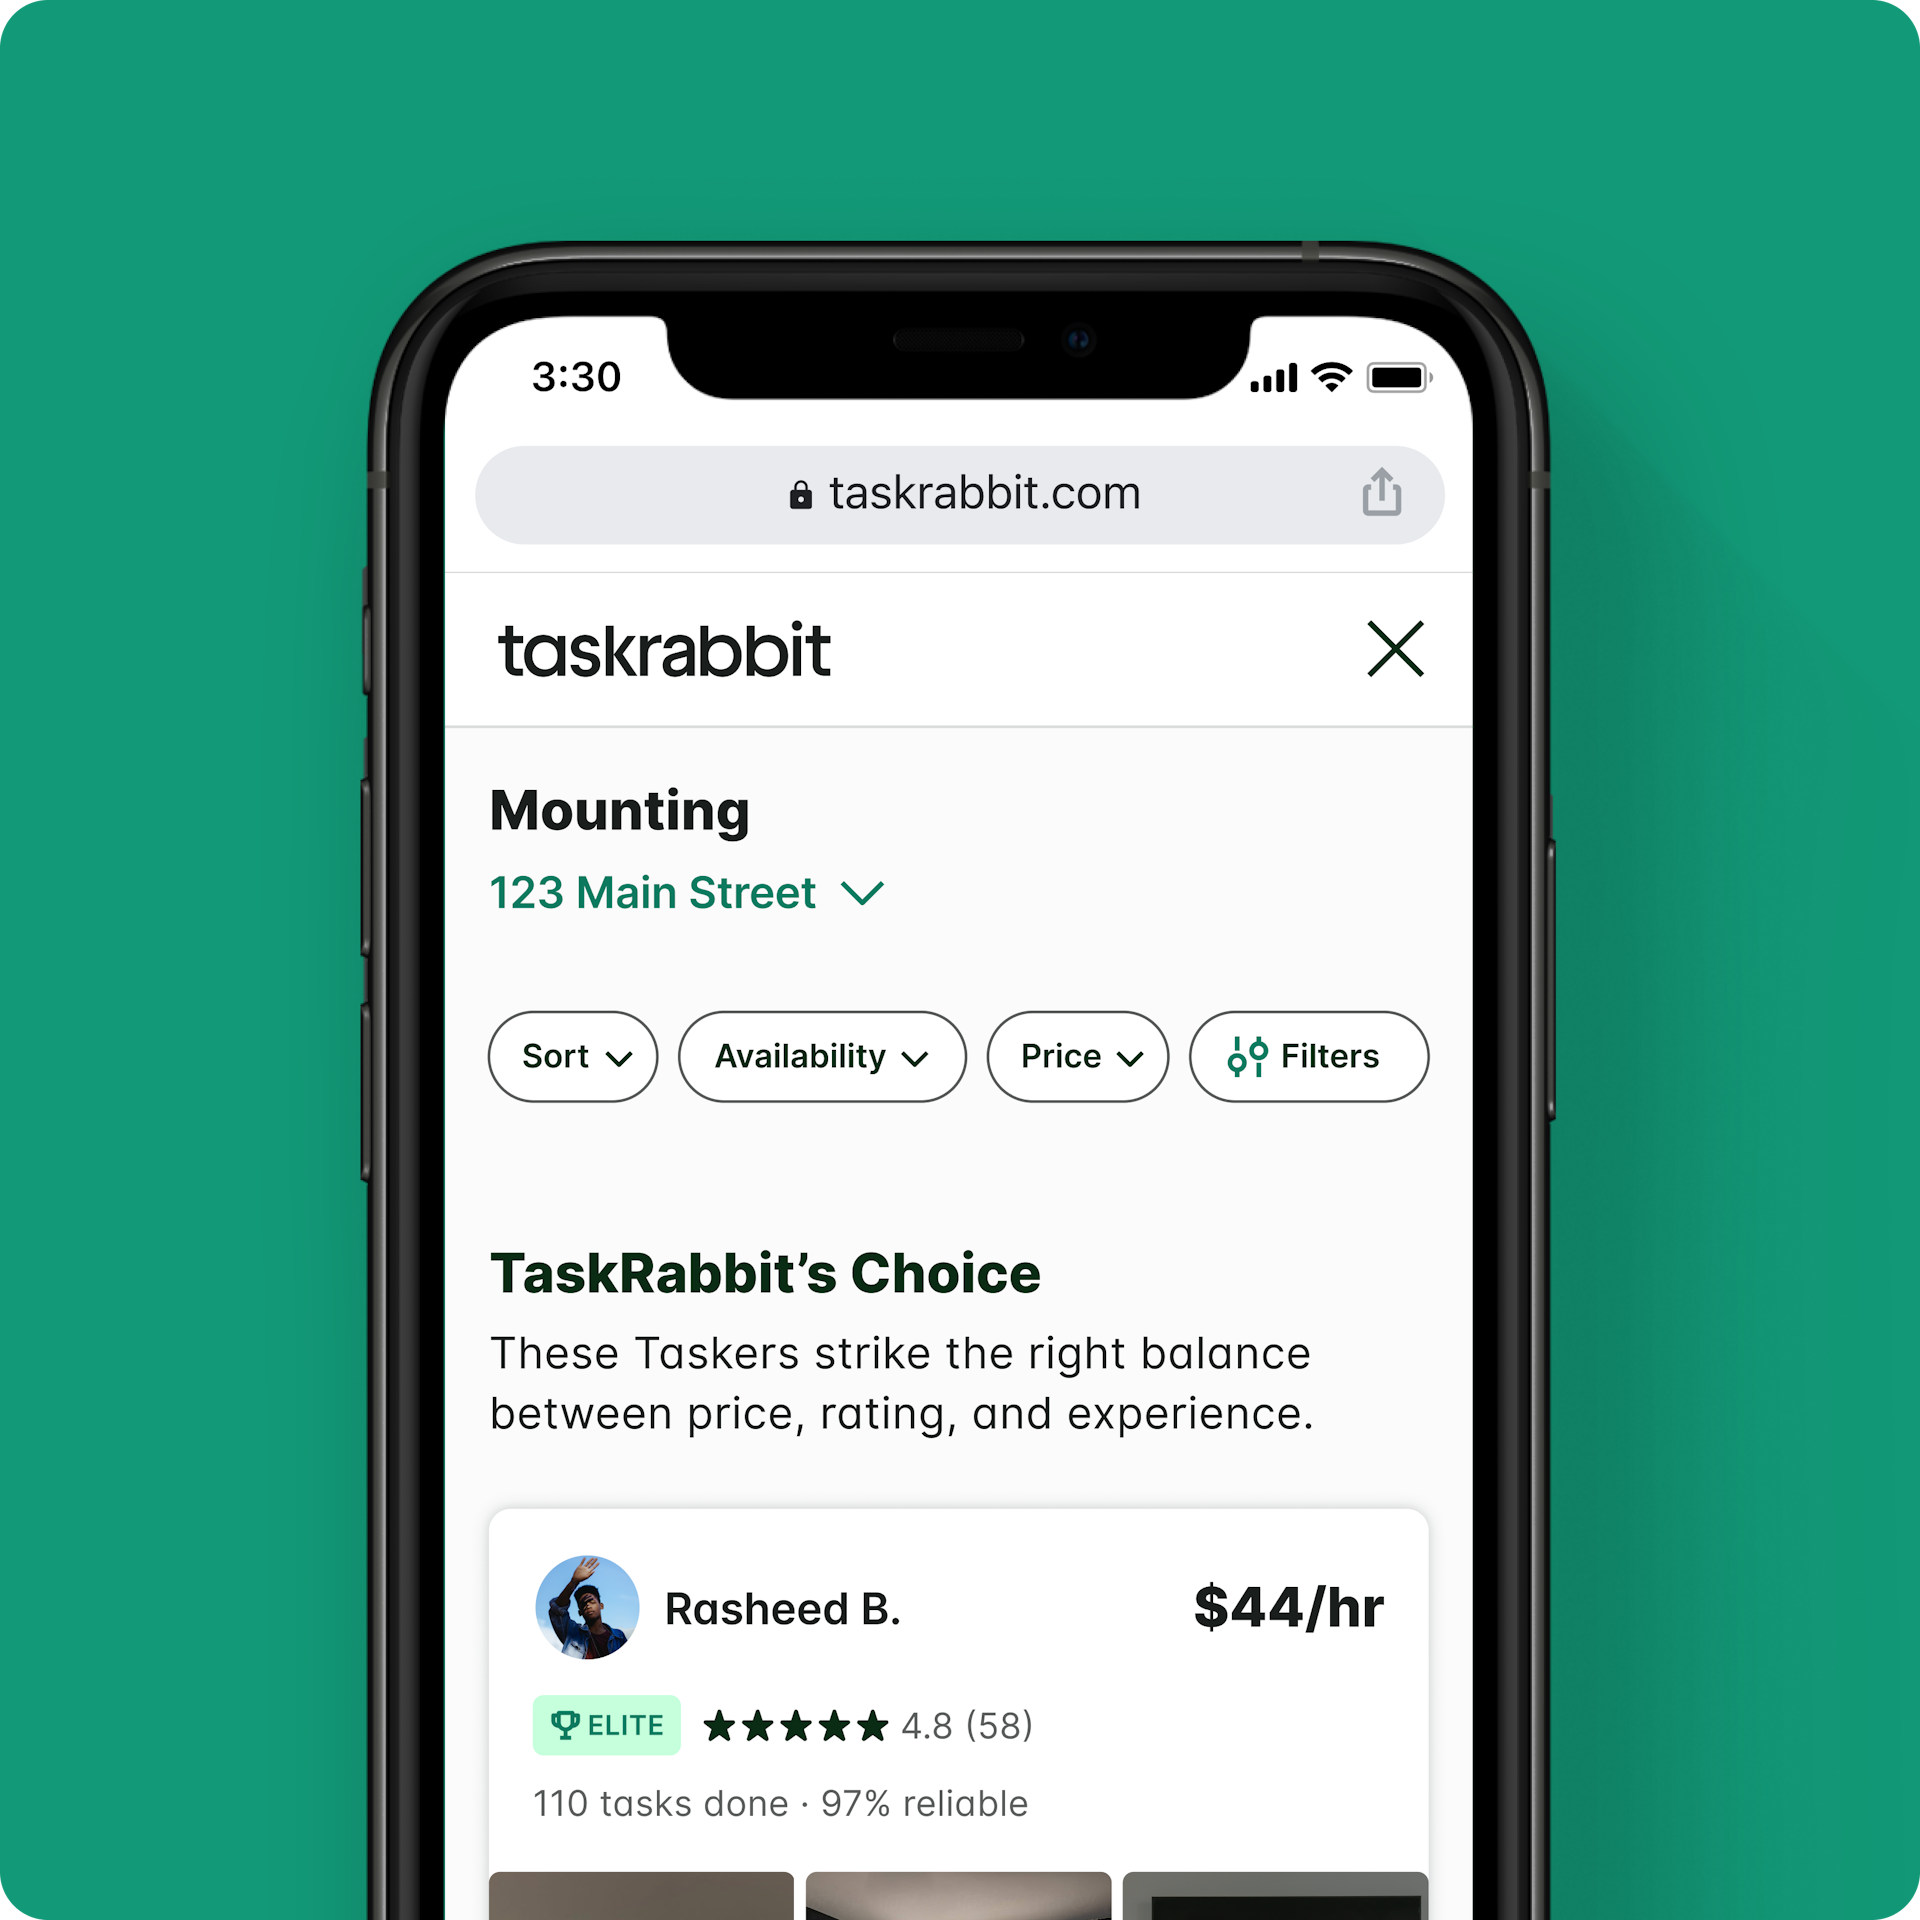 Designs we did for TaskRabbit